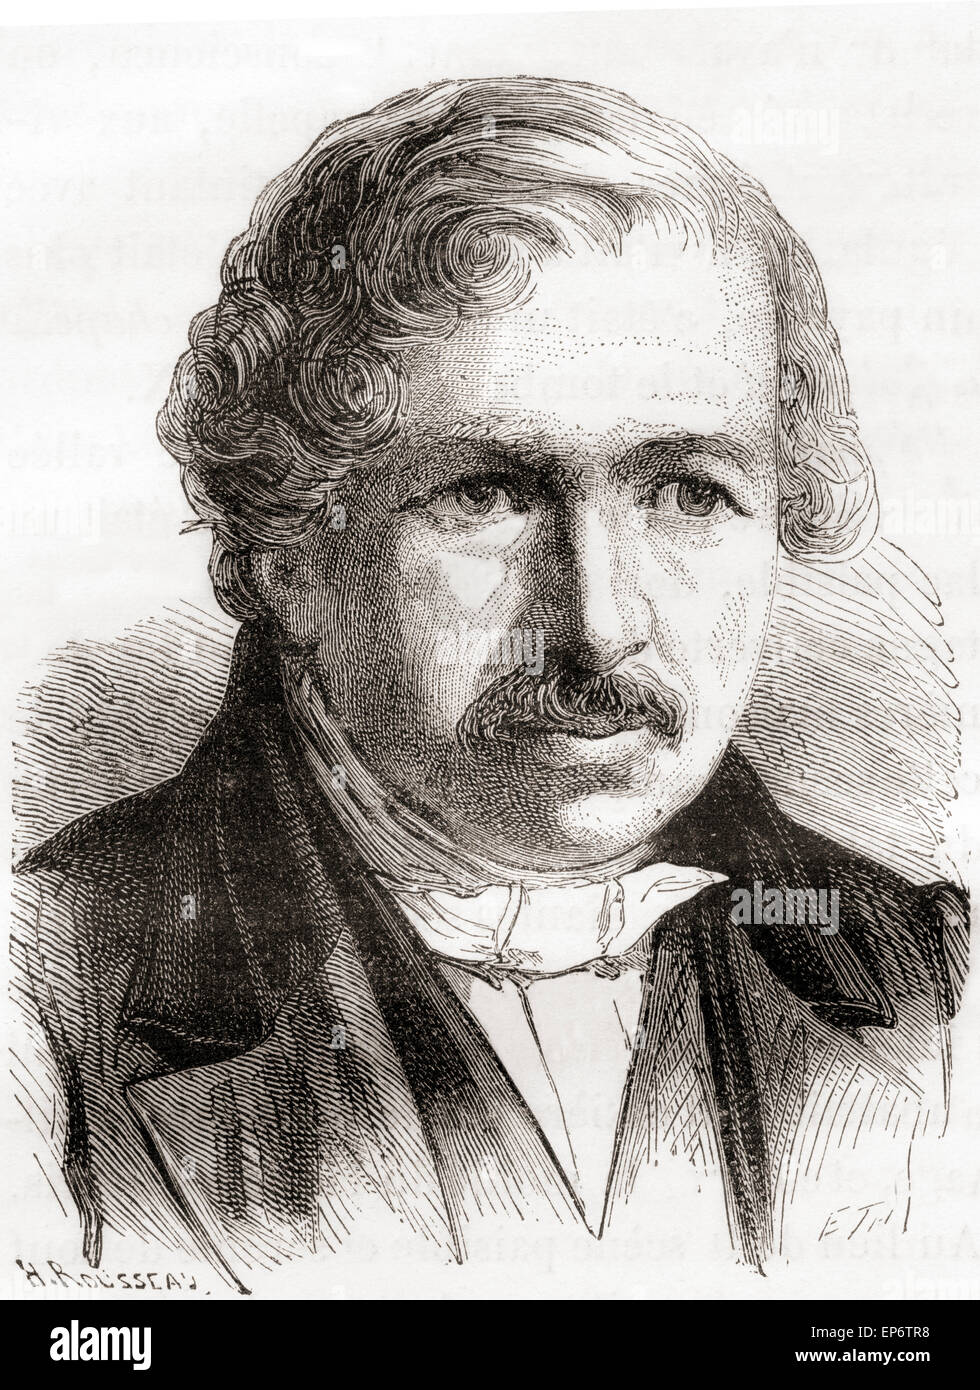 Louis-Jacques-Mandé Daguerre, 1787 - 1851. Artista francese e fotografo, riconosciuto per la sua invenzione del processo daguerreotype della fotografia. Foto Stock